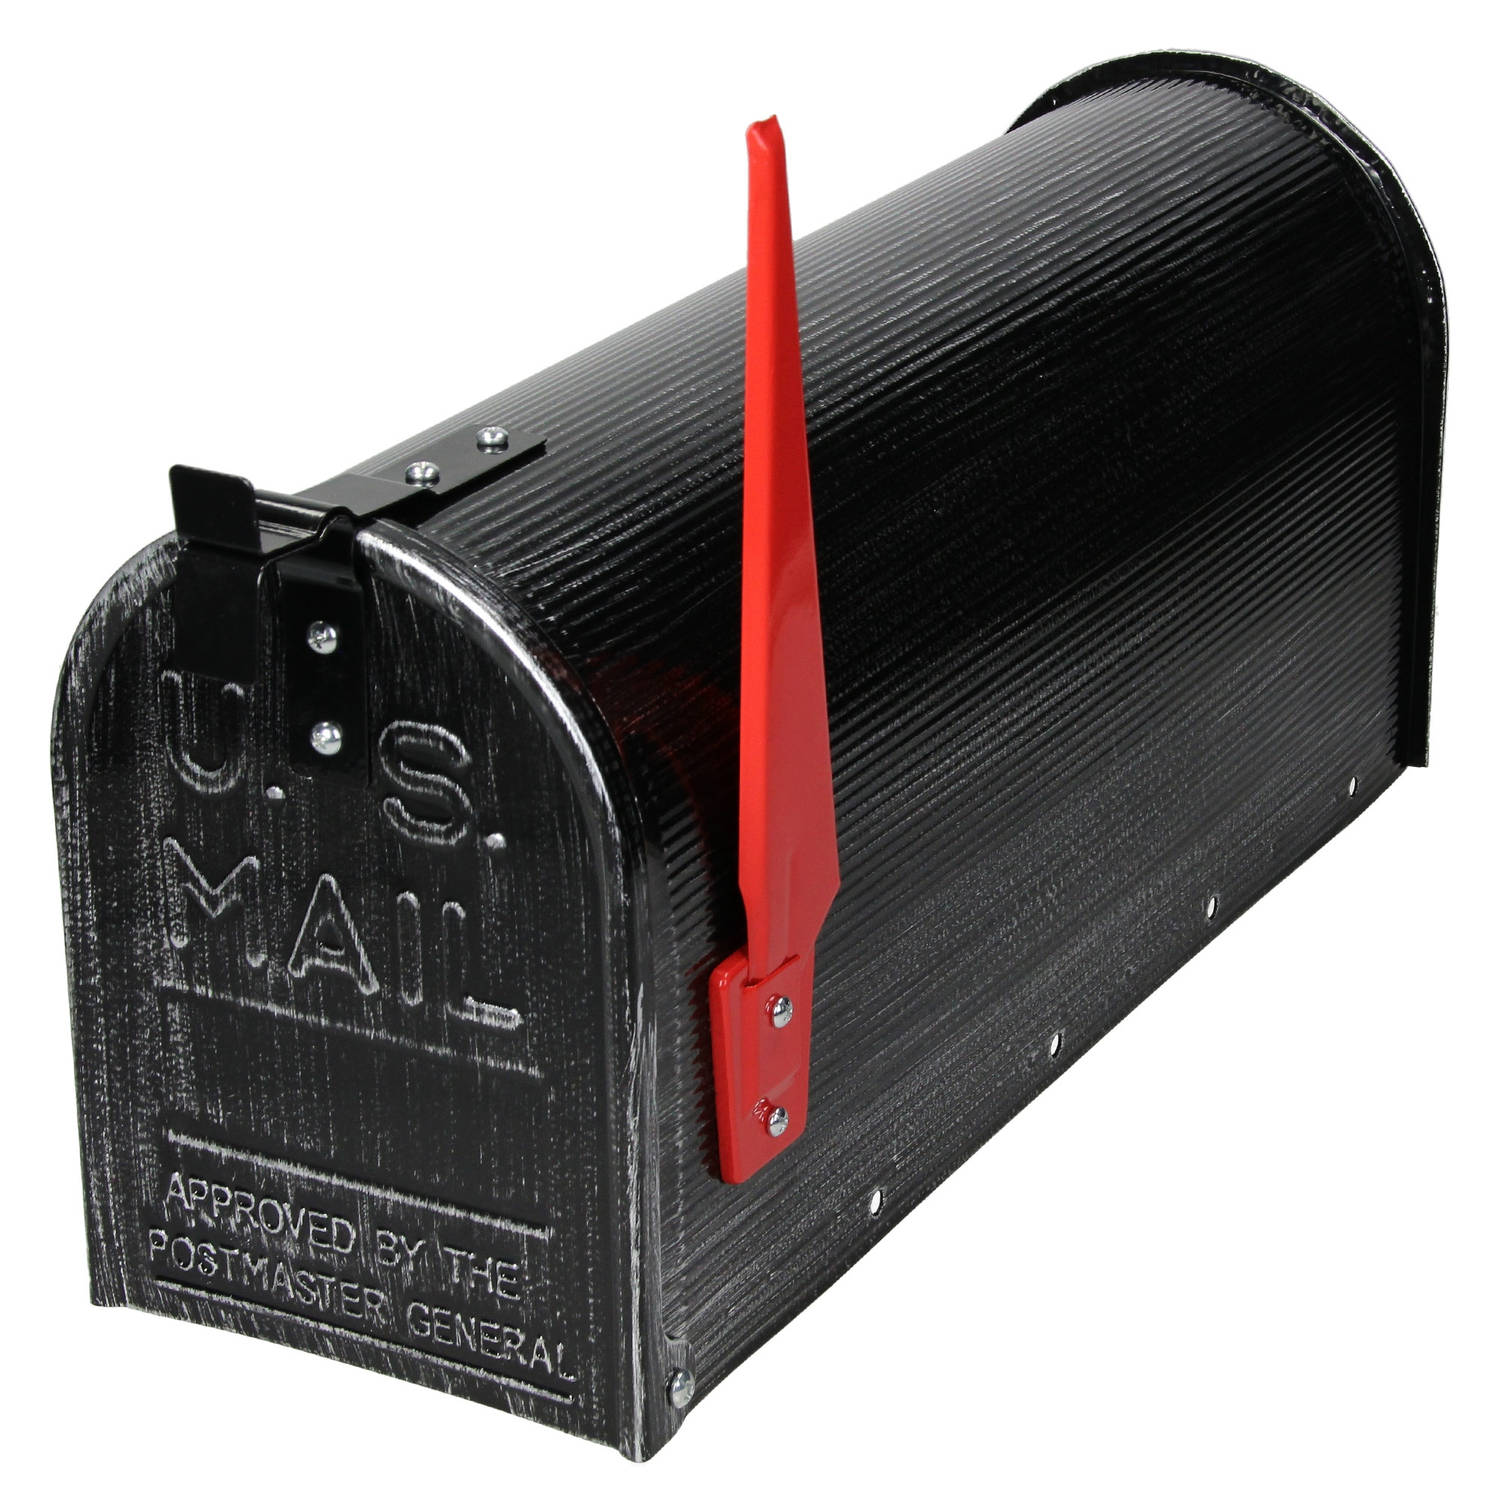 Kunstmatig ontwikkeling niet verwant ML-Design US brievenbus met opsteekbare vlag in rood, retro-zwart, gemaakt  van aluminium | Blokker